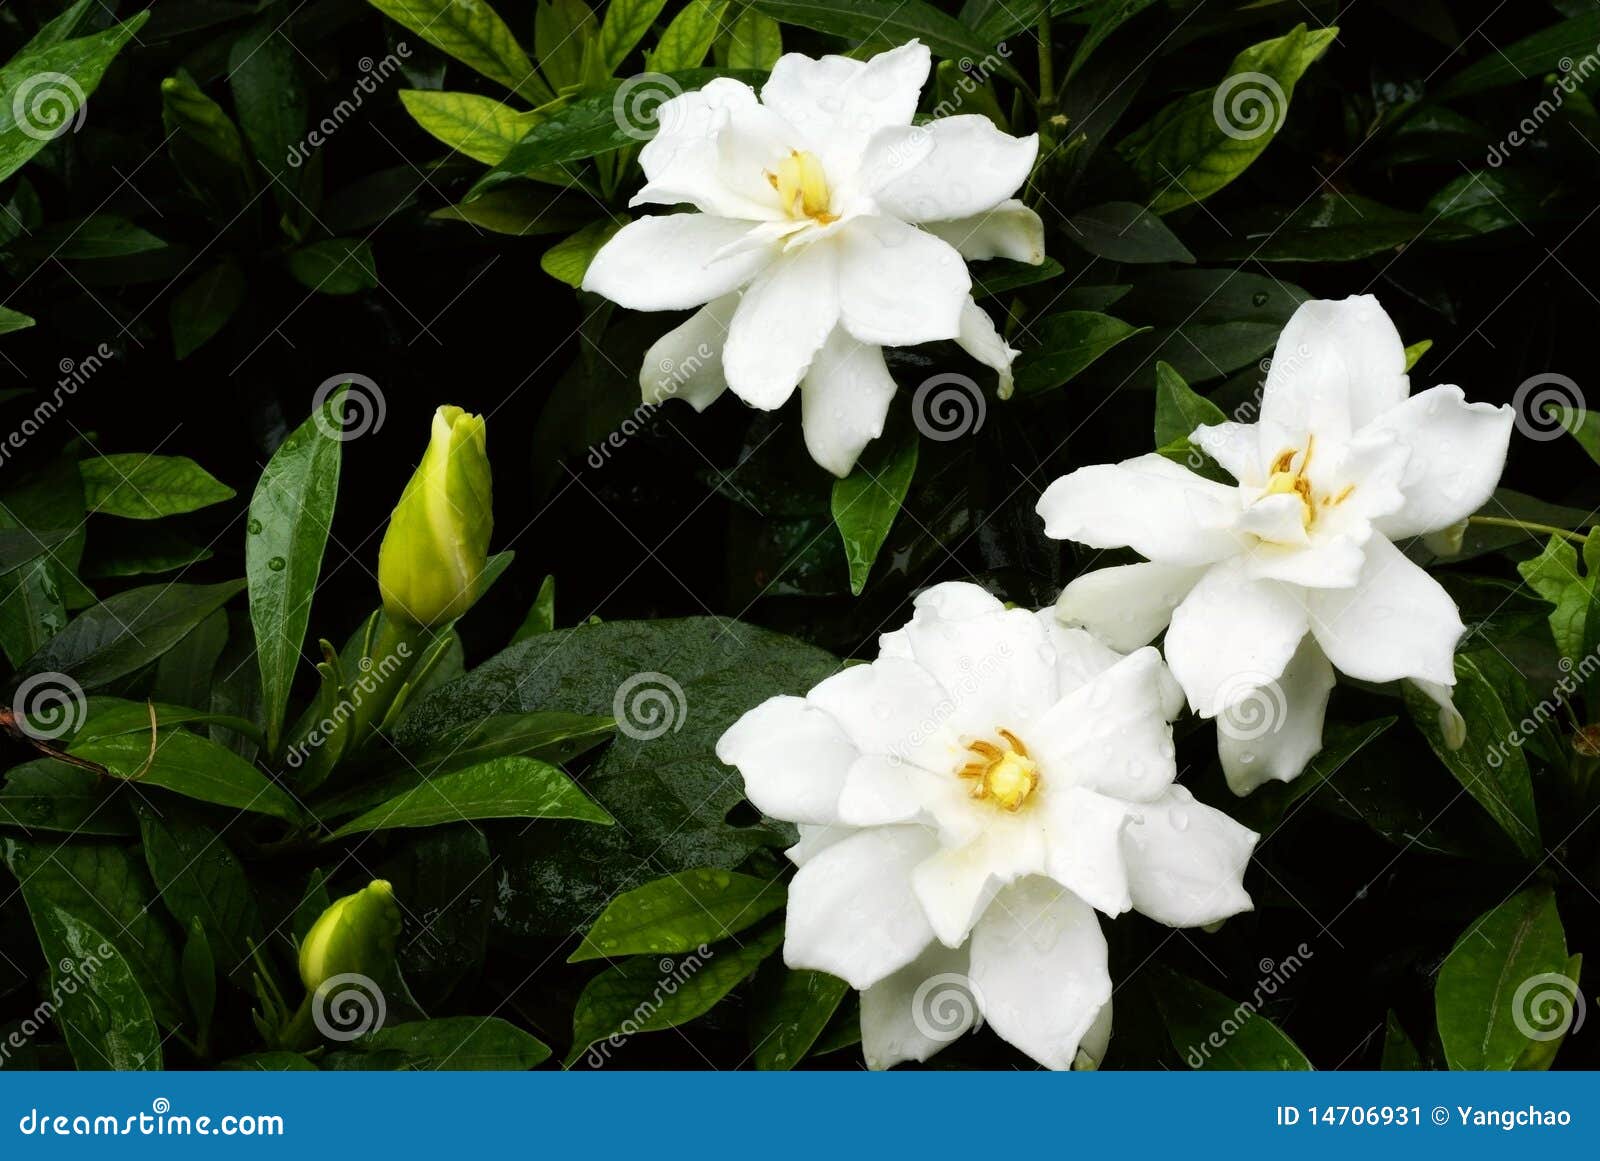 Flor do jasmim de cabo imagem de stock. Imagem de gota - 14706931